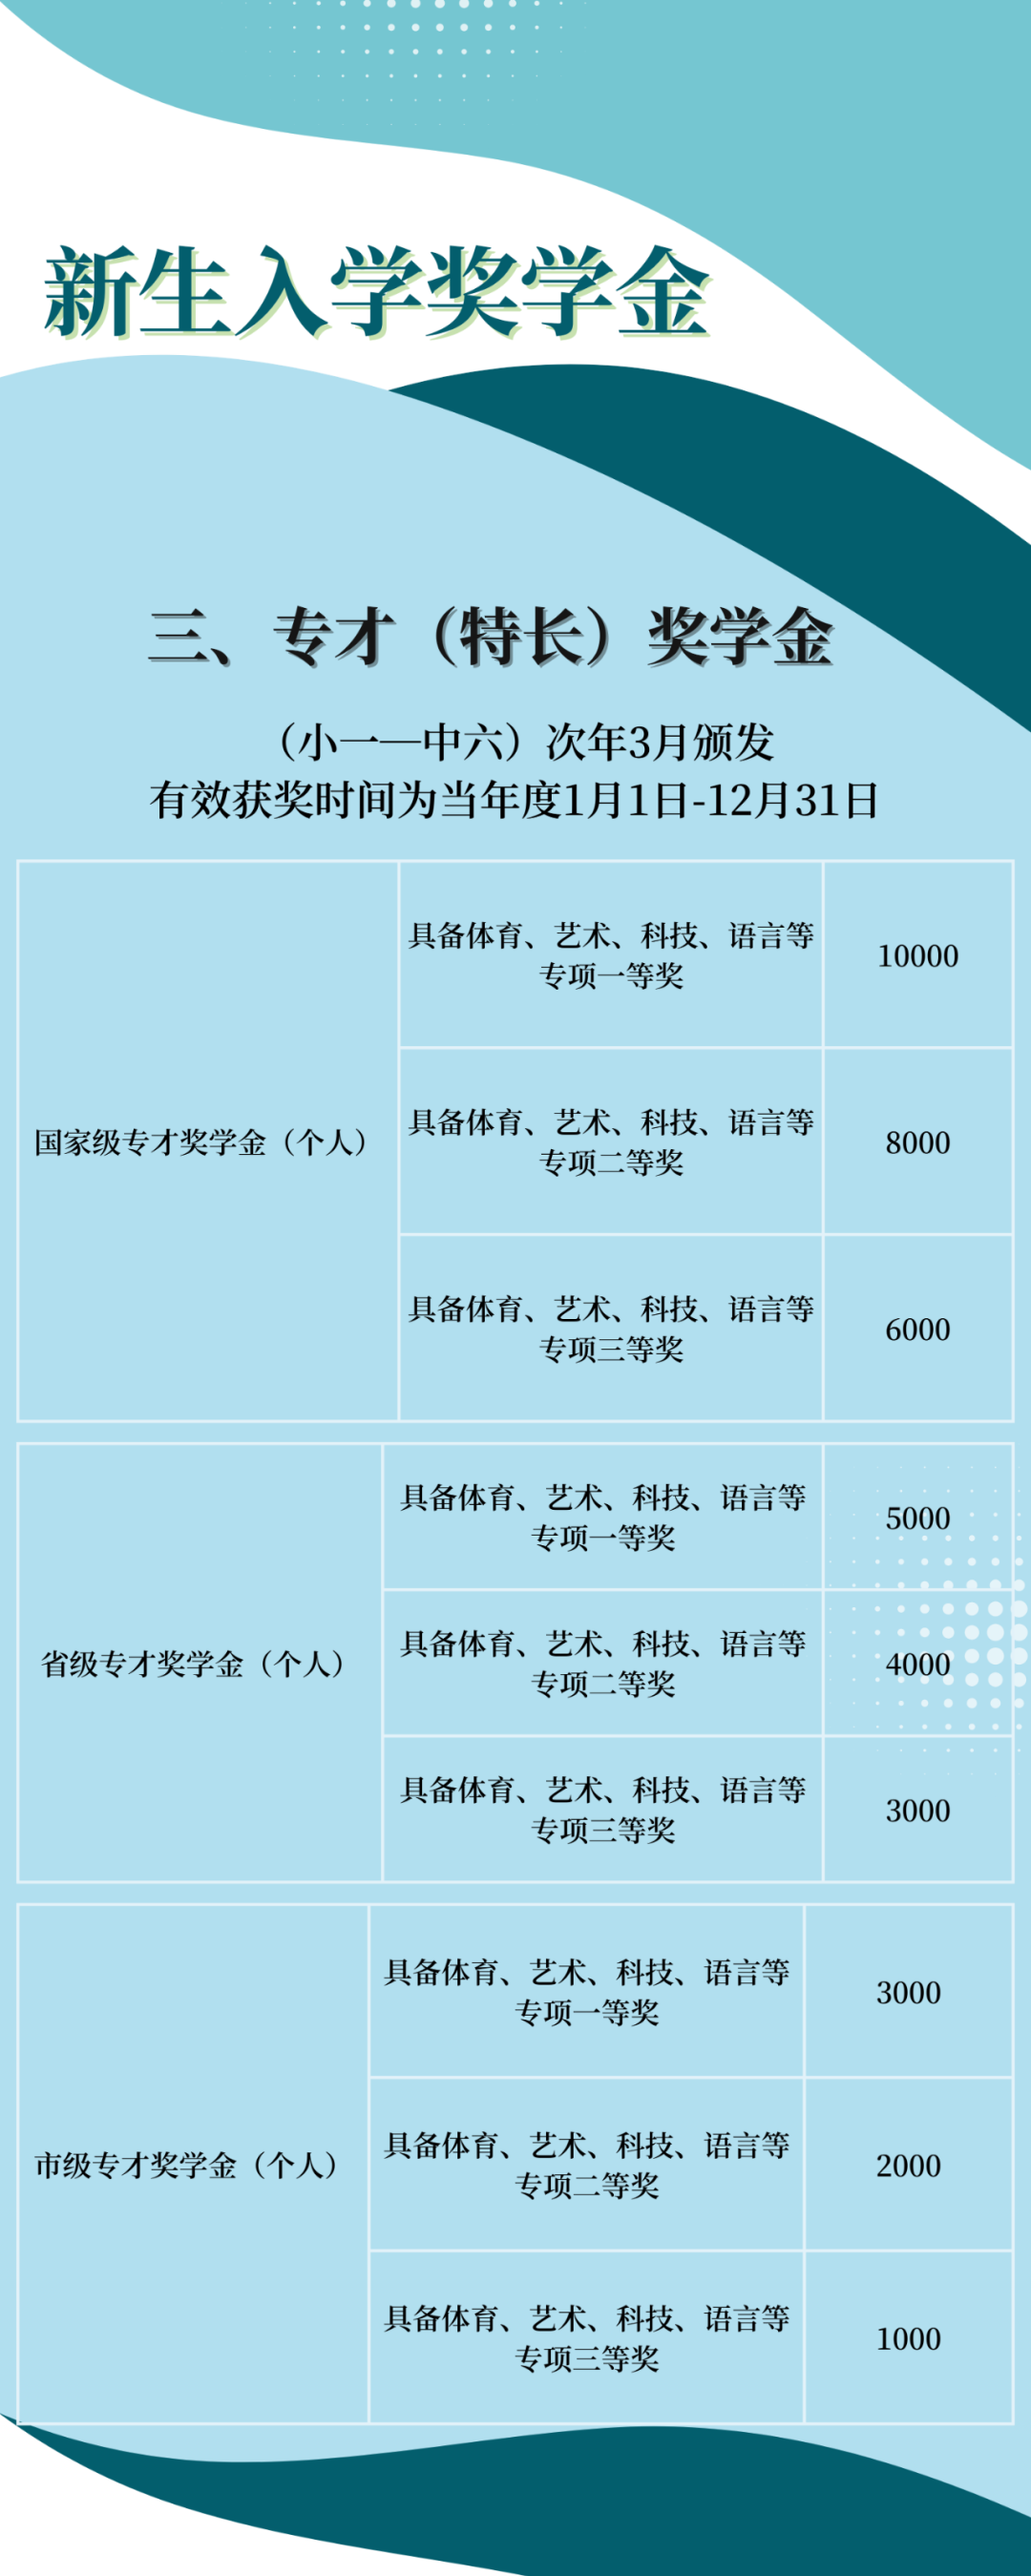 新生入学奖学金 | 广州暨大港澳子弟学校2024-2025“卓越”奖学金计划正式公布